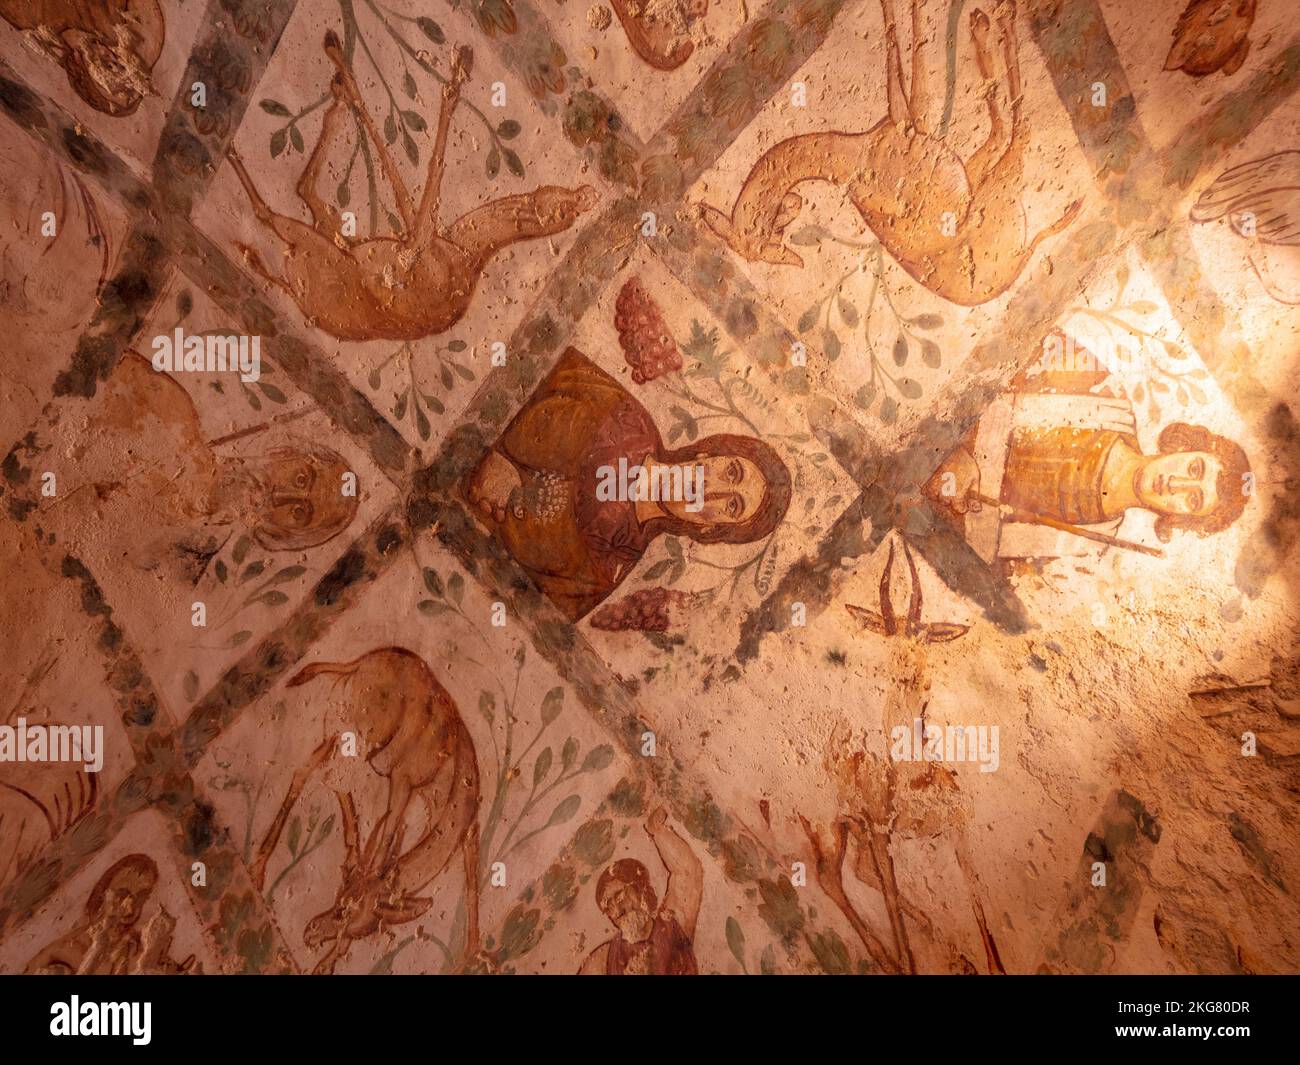 Le plafond de l'Amra de Qusayr avec des fresques anciennes fascinantes des animaux et des humains Banque D'Images